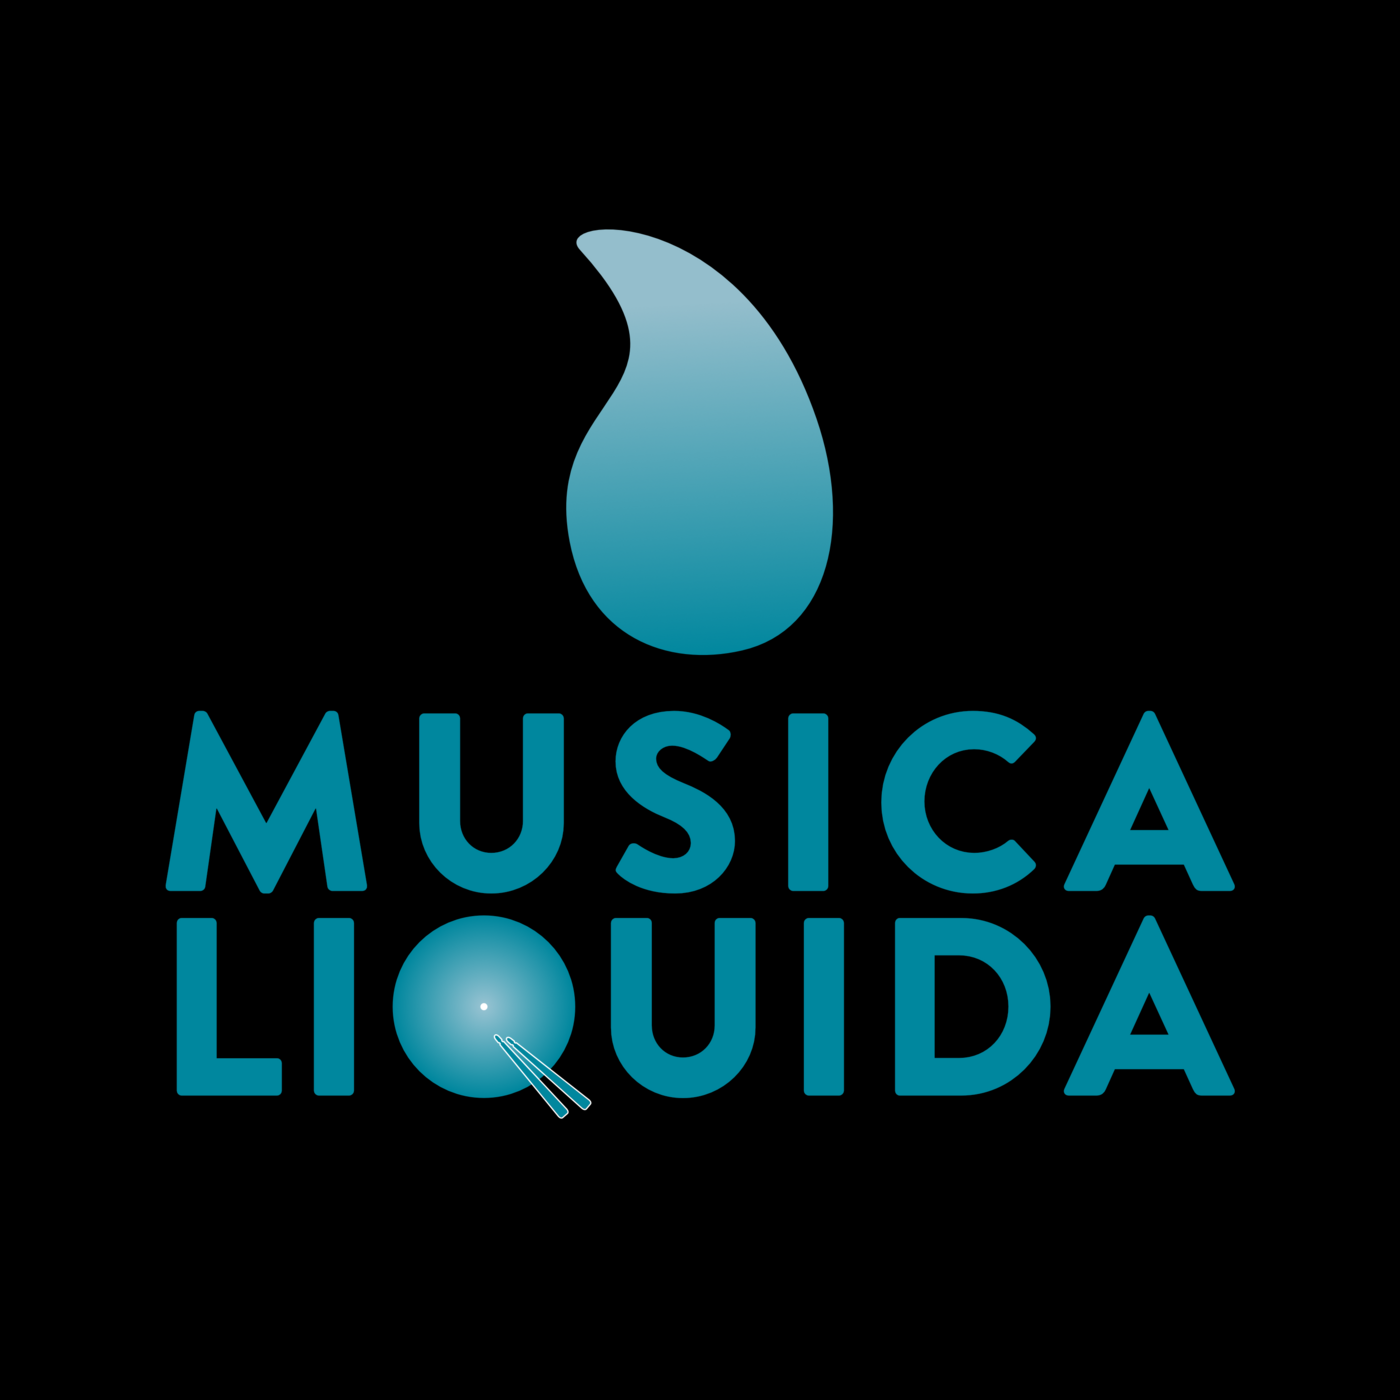 Episode 1: Musica Liquida 2022 - Presentazione della rassegna